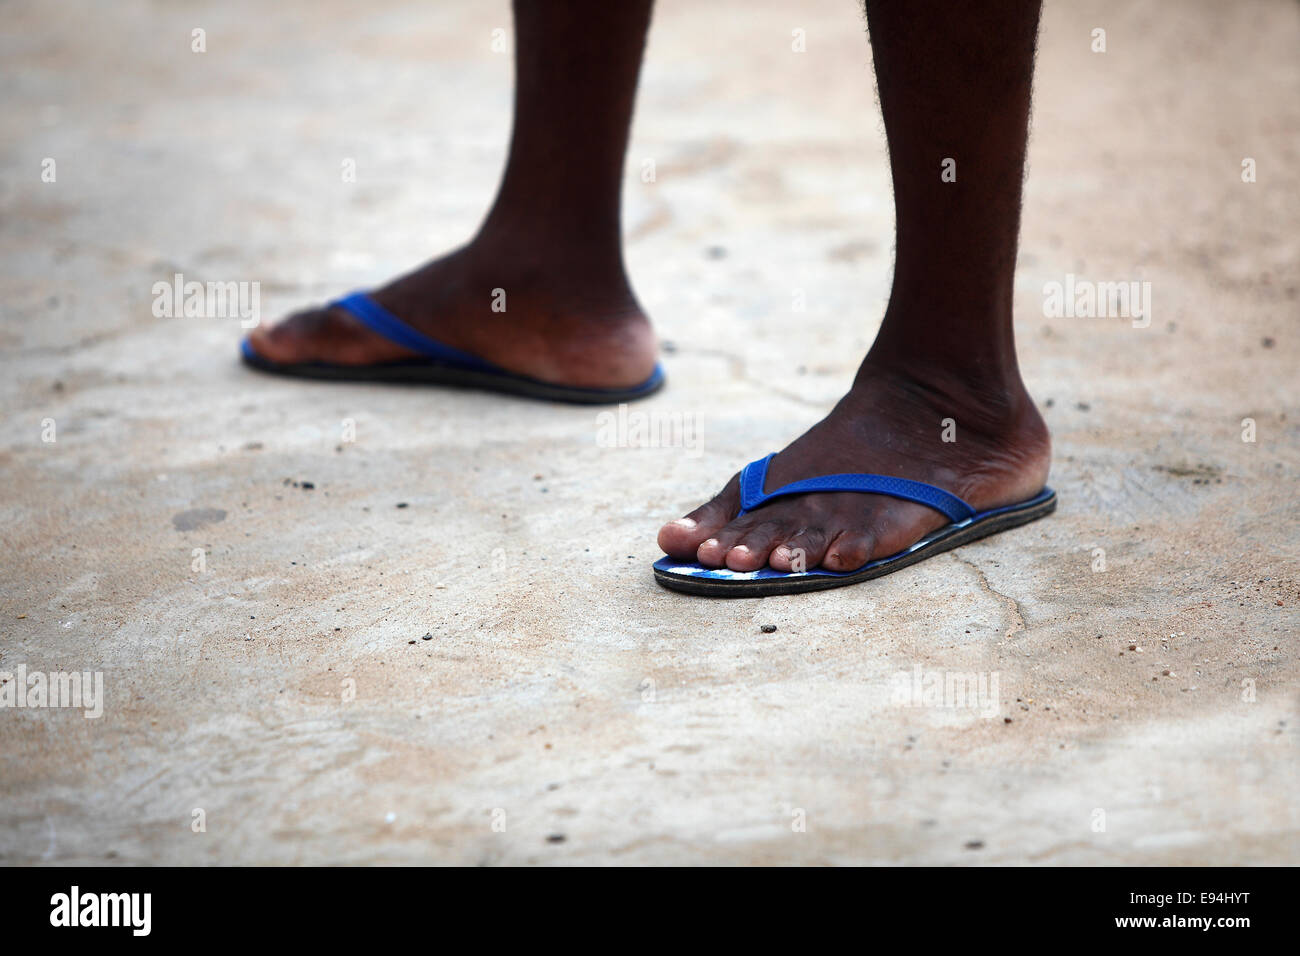 Füße von einem afrikanischen Mann in blau Flip flops auf steinigem Untergrund Stockfoto